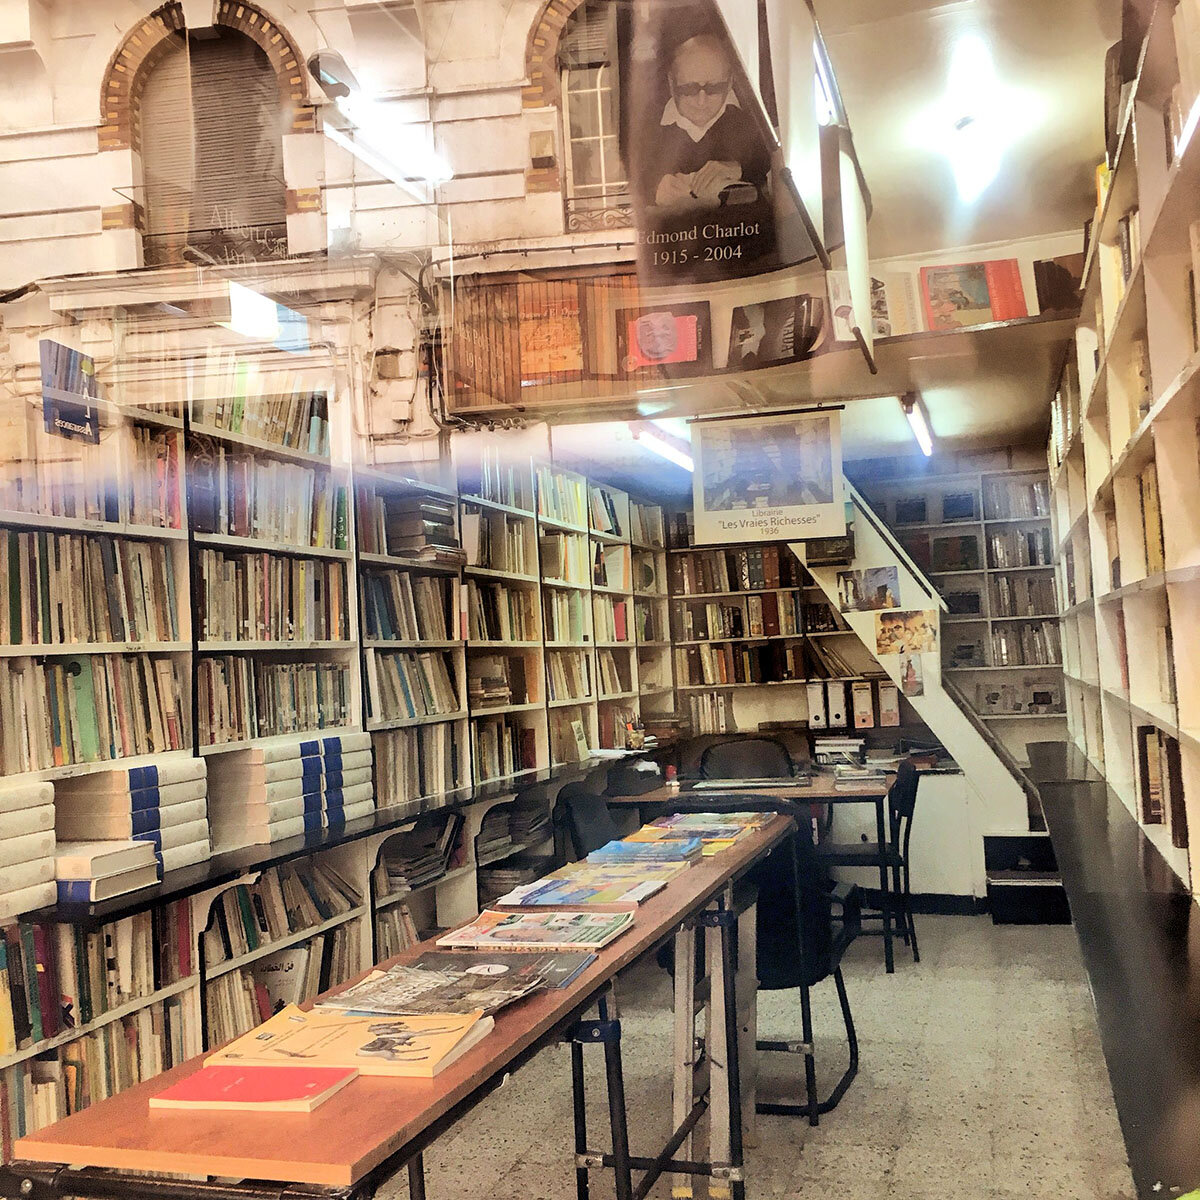 Les Vraies Richesses bookshop, 2 bis, Rue Hamani, Algiers.